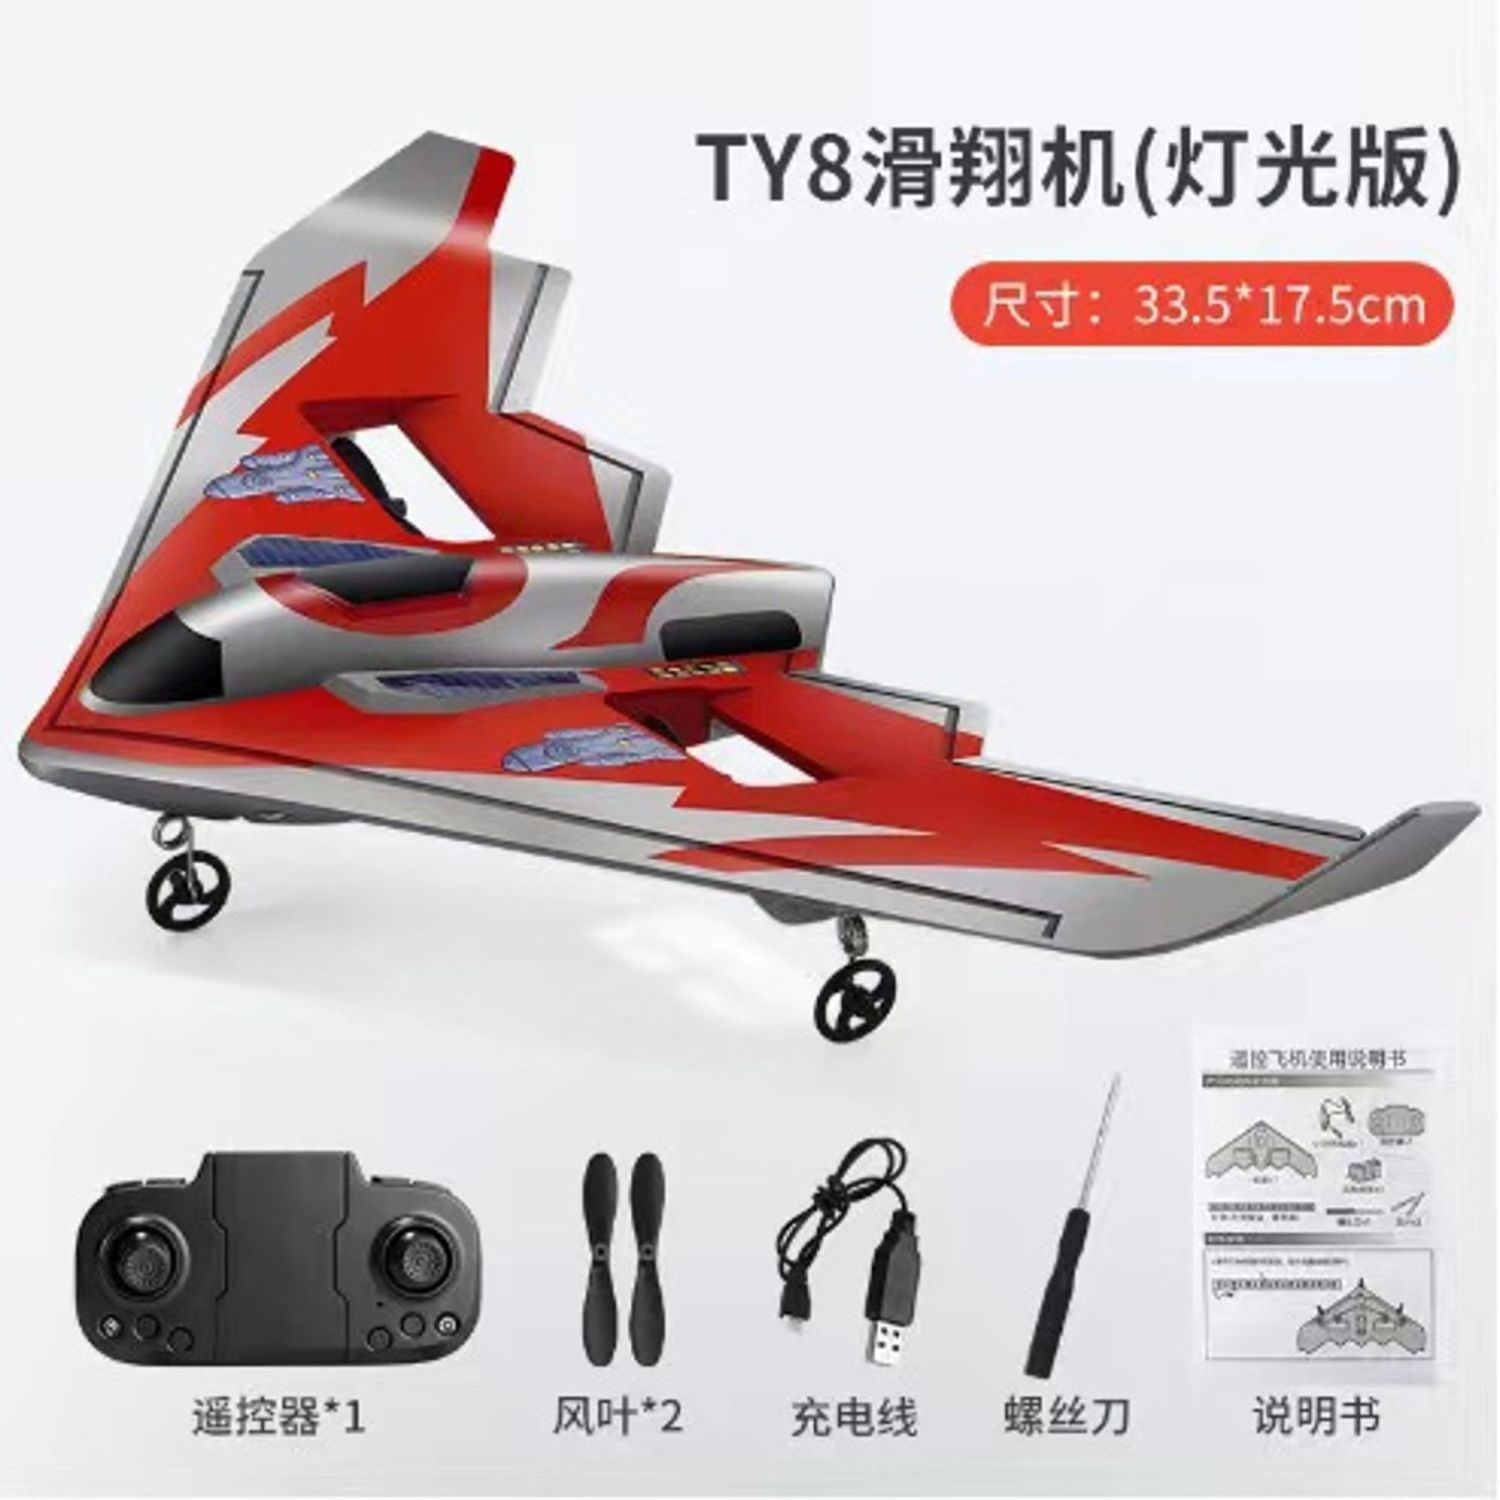 好玩遙控飛機 三角翼戰斗機 玩具 男孩兒童滑翔耐摔充電固定翼航模